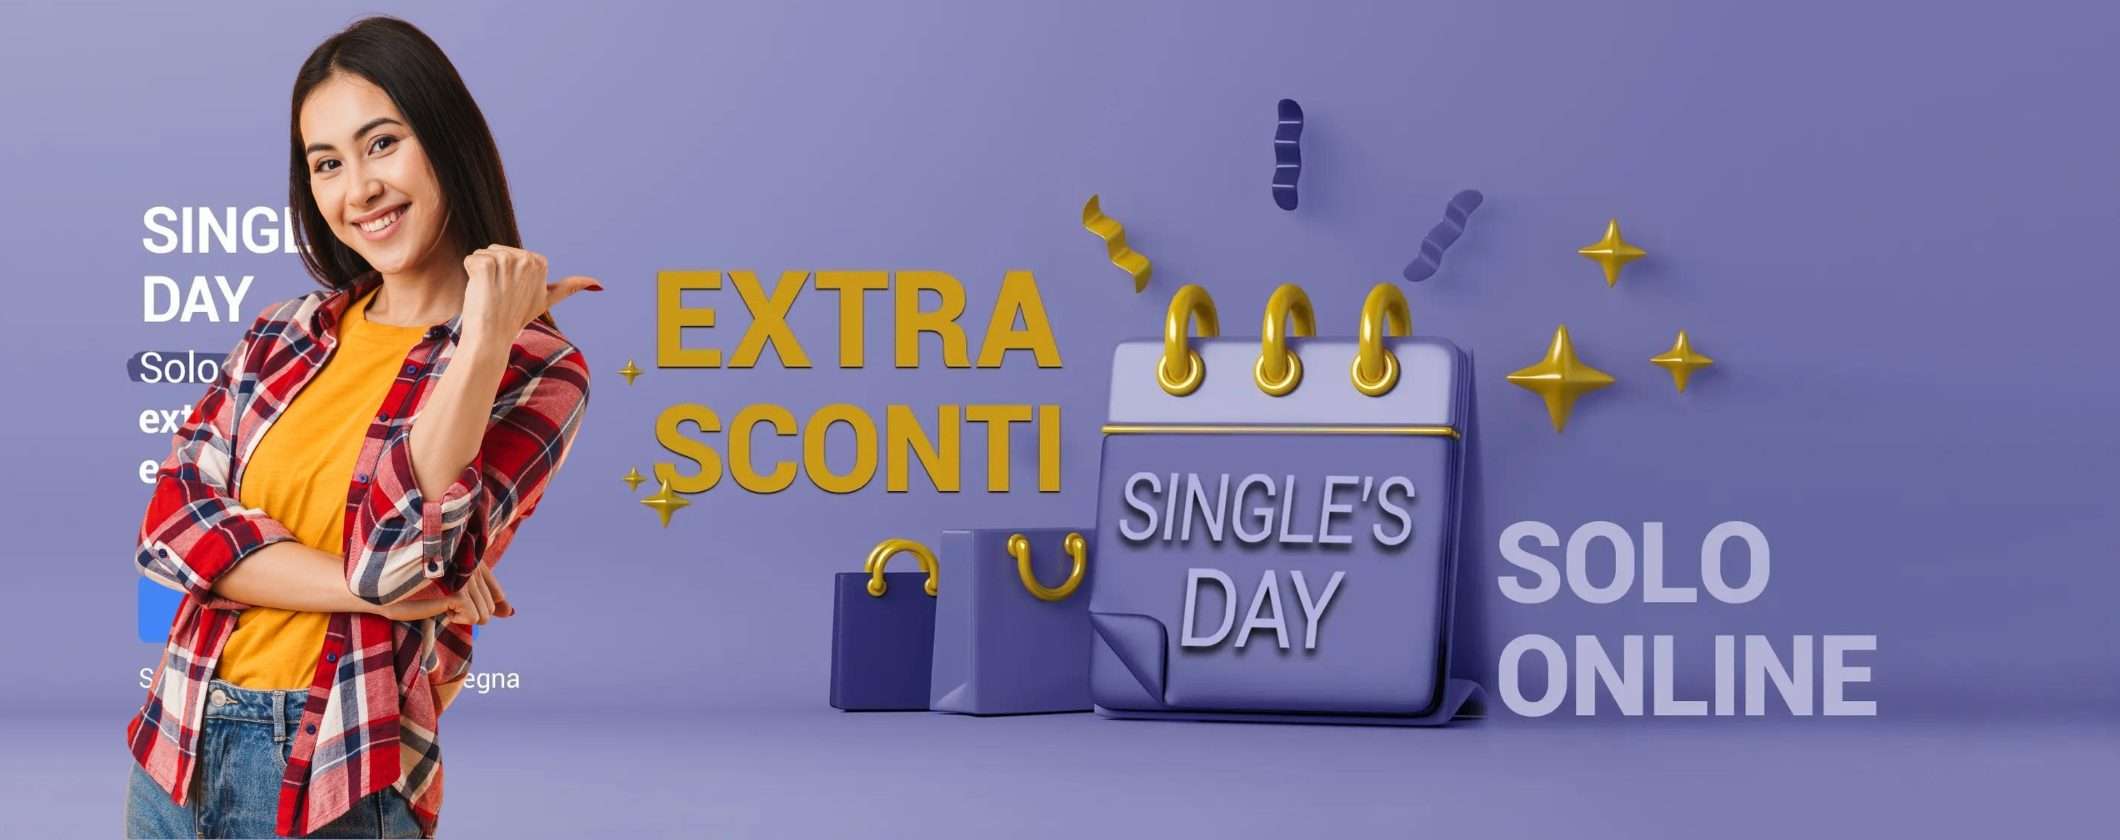 Volantino Unieuro Single's Day: un BOTTO di SCONTI ti aspettano